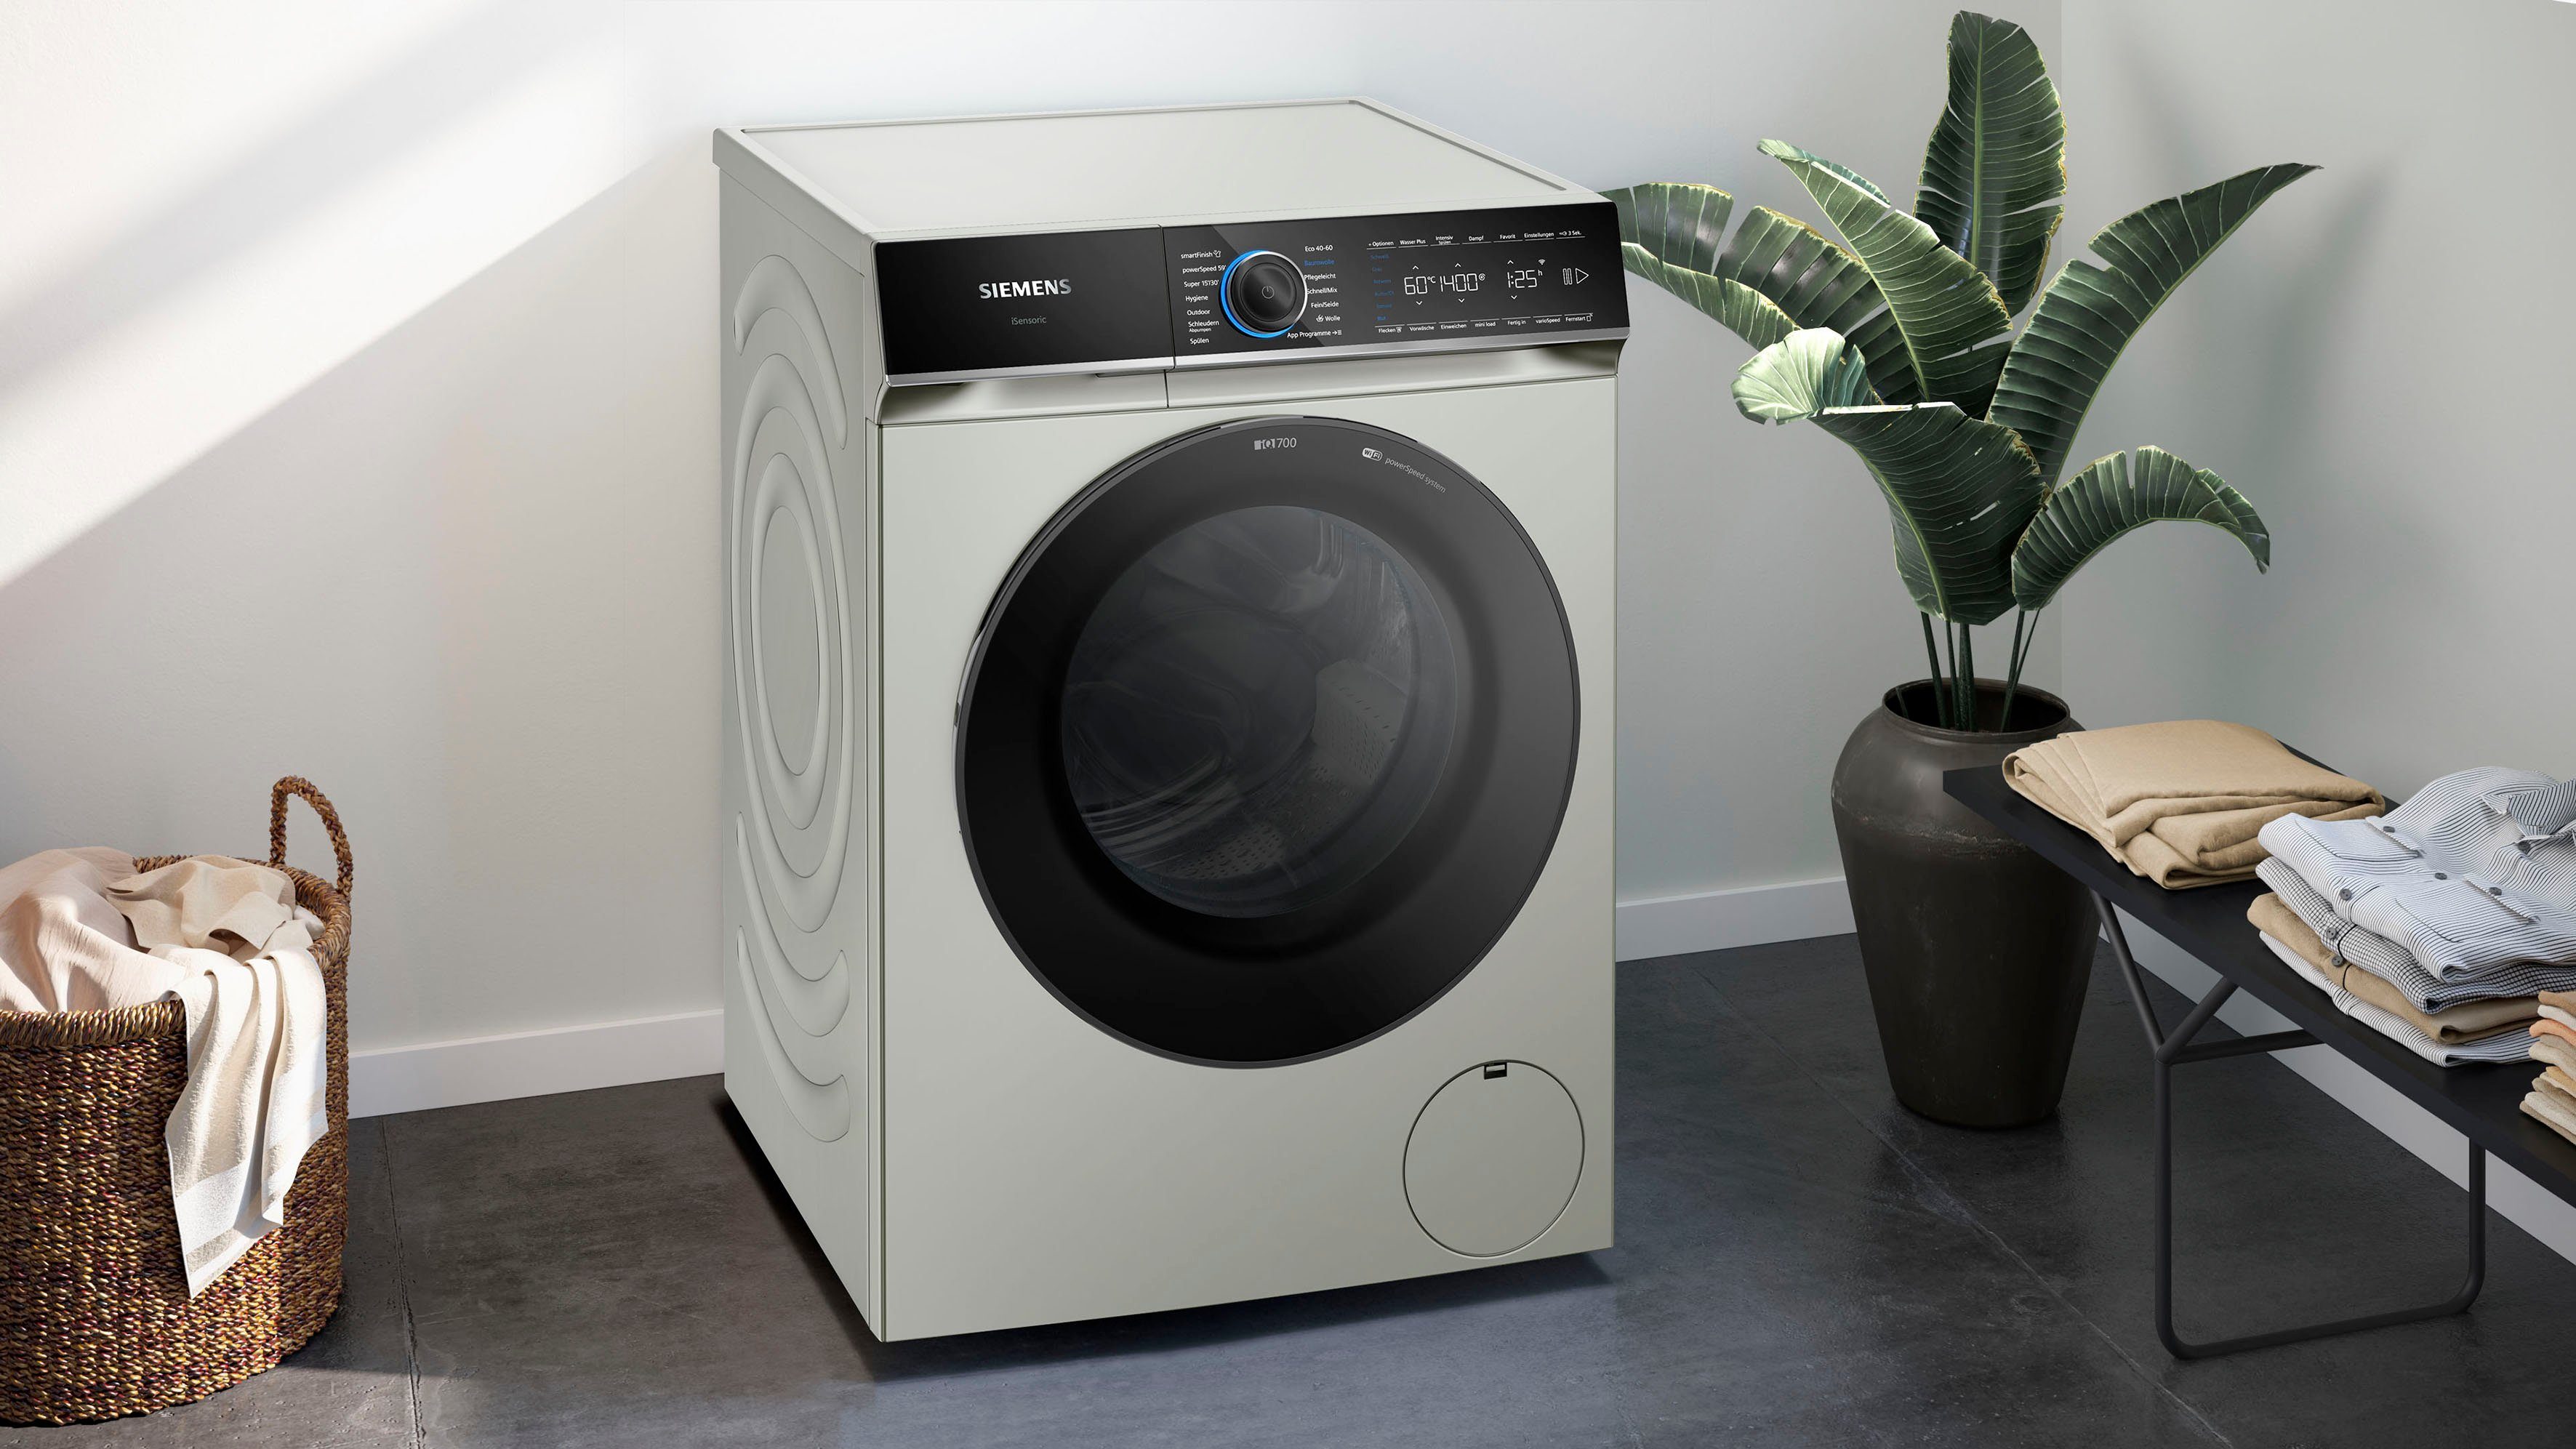 SIEMENS Waschmaschine WG44B20X40, – smartFinish dank kg, Knitterfalten glättet sämtliche 9 Dampf U/min, 1400